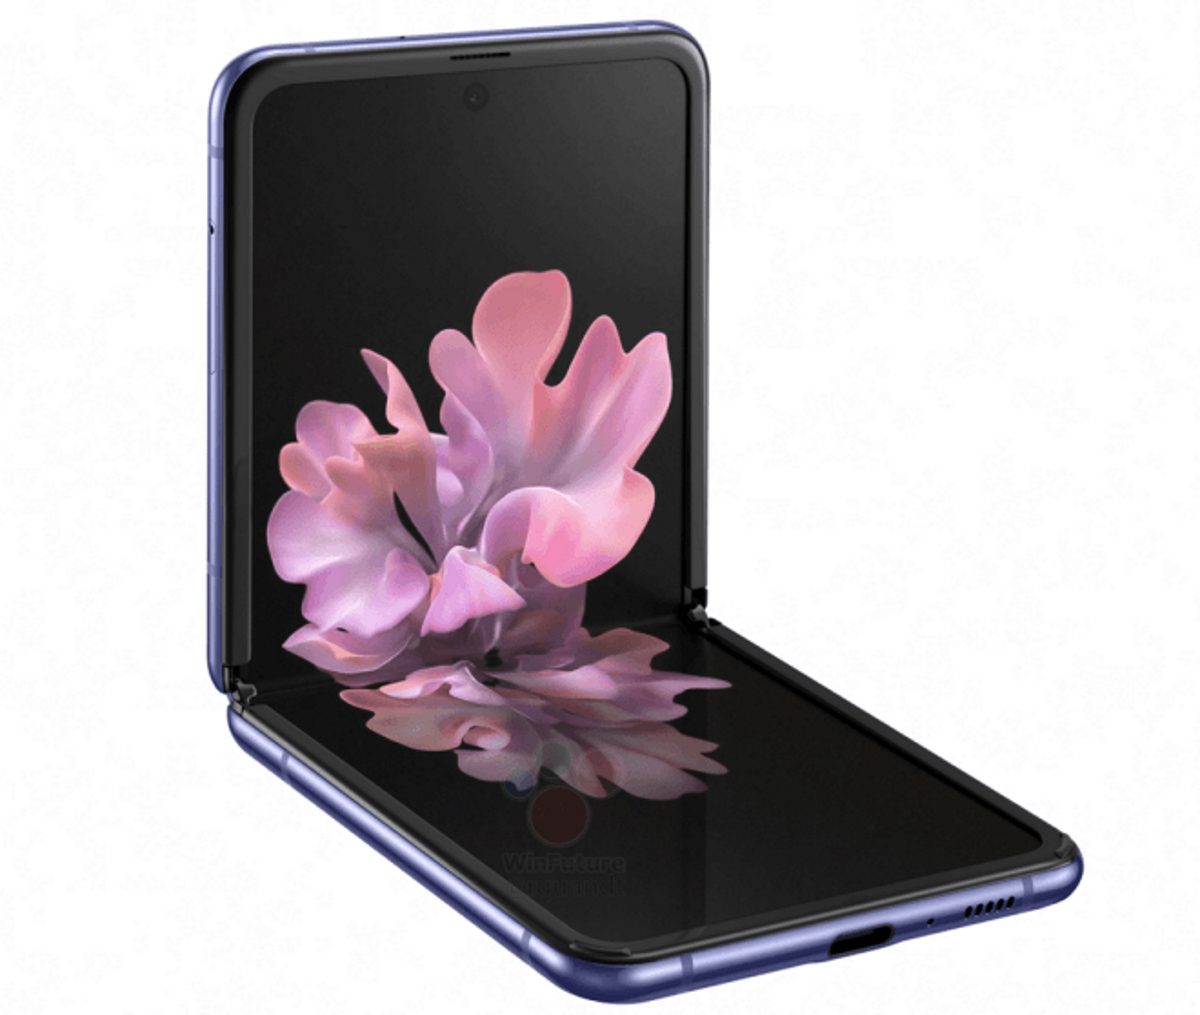 Imagem oficial da Samsung Galaxy O Z Flip mostra um telefone dobrável com marcas cheias